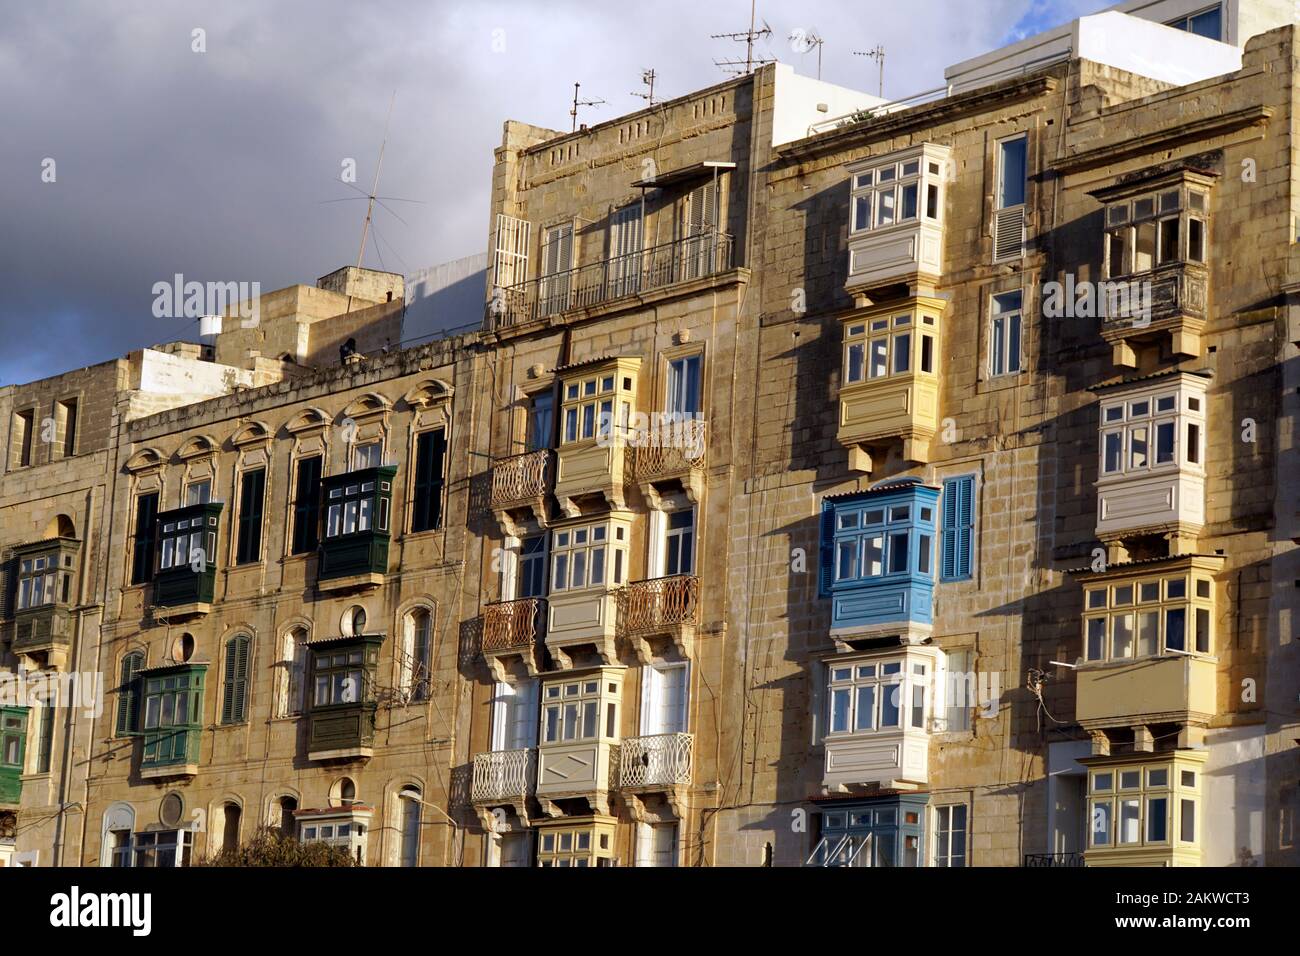 Wohnhäuser mit typischen Holzbalkonen in der historischen Altstadt, Valletta, Malta Stock Photo